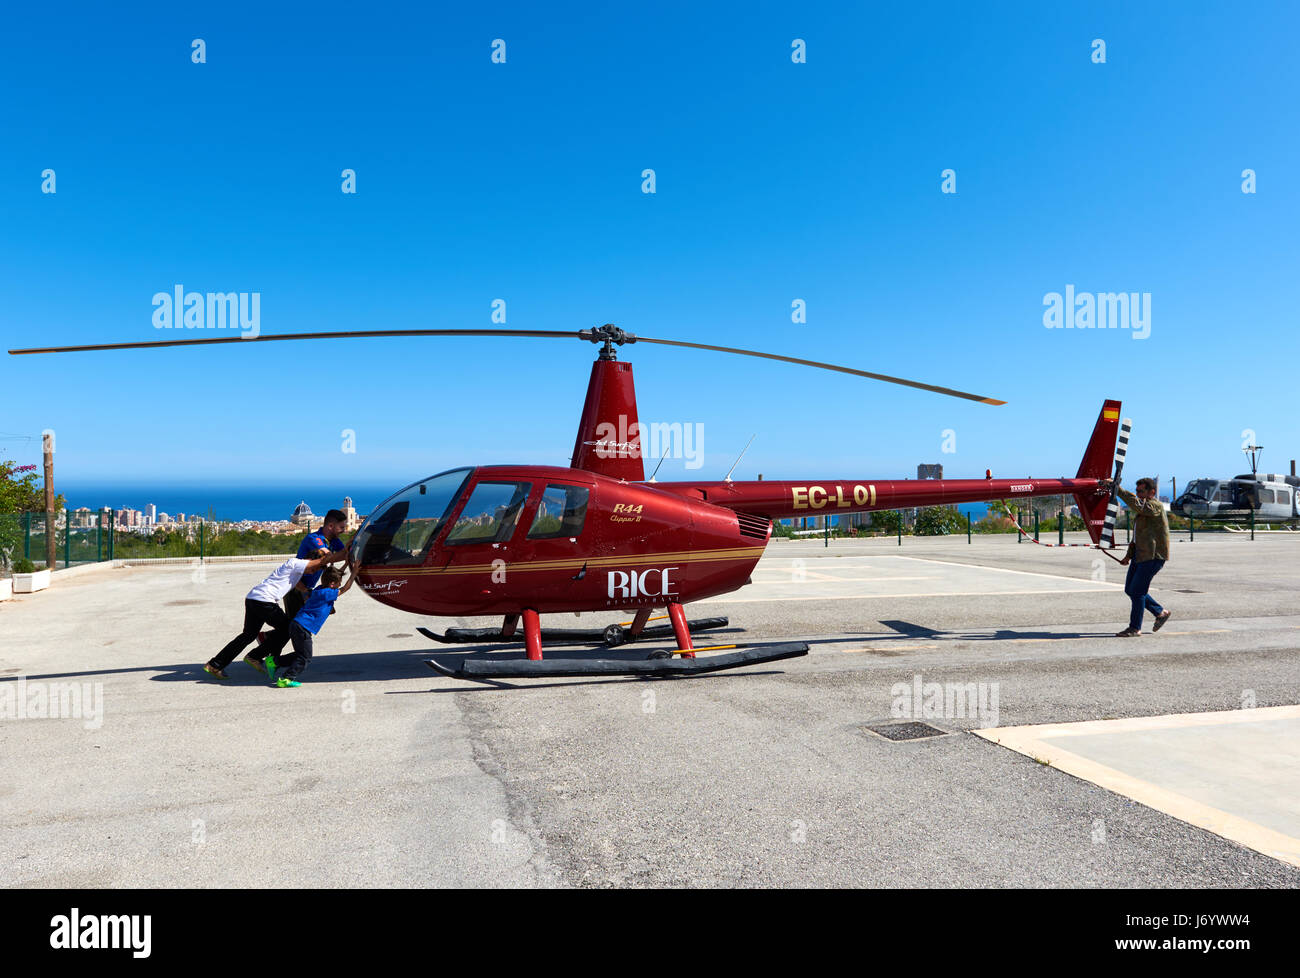 Benidorm, España - Mayo 13, 2017: la gente y el helicóptero en un campo de aterrizaje. Excursión en helicóptero de Benidorm, es una atracción turística de la Costa Blanca. Provi Foto de stock